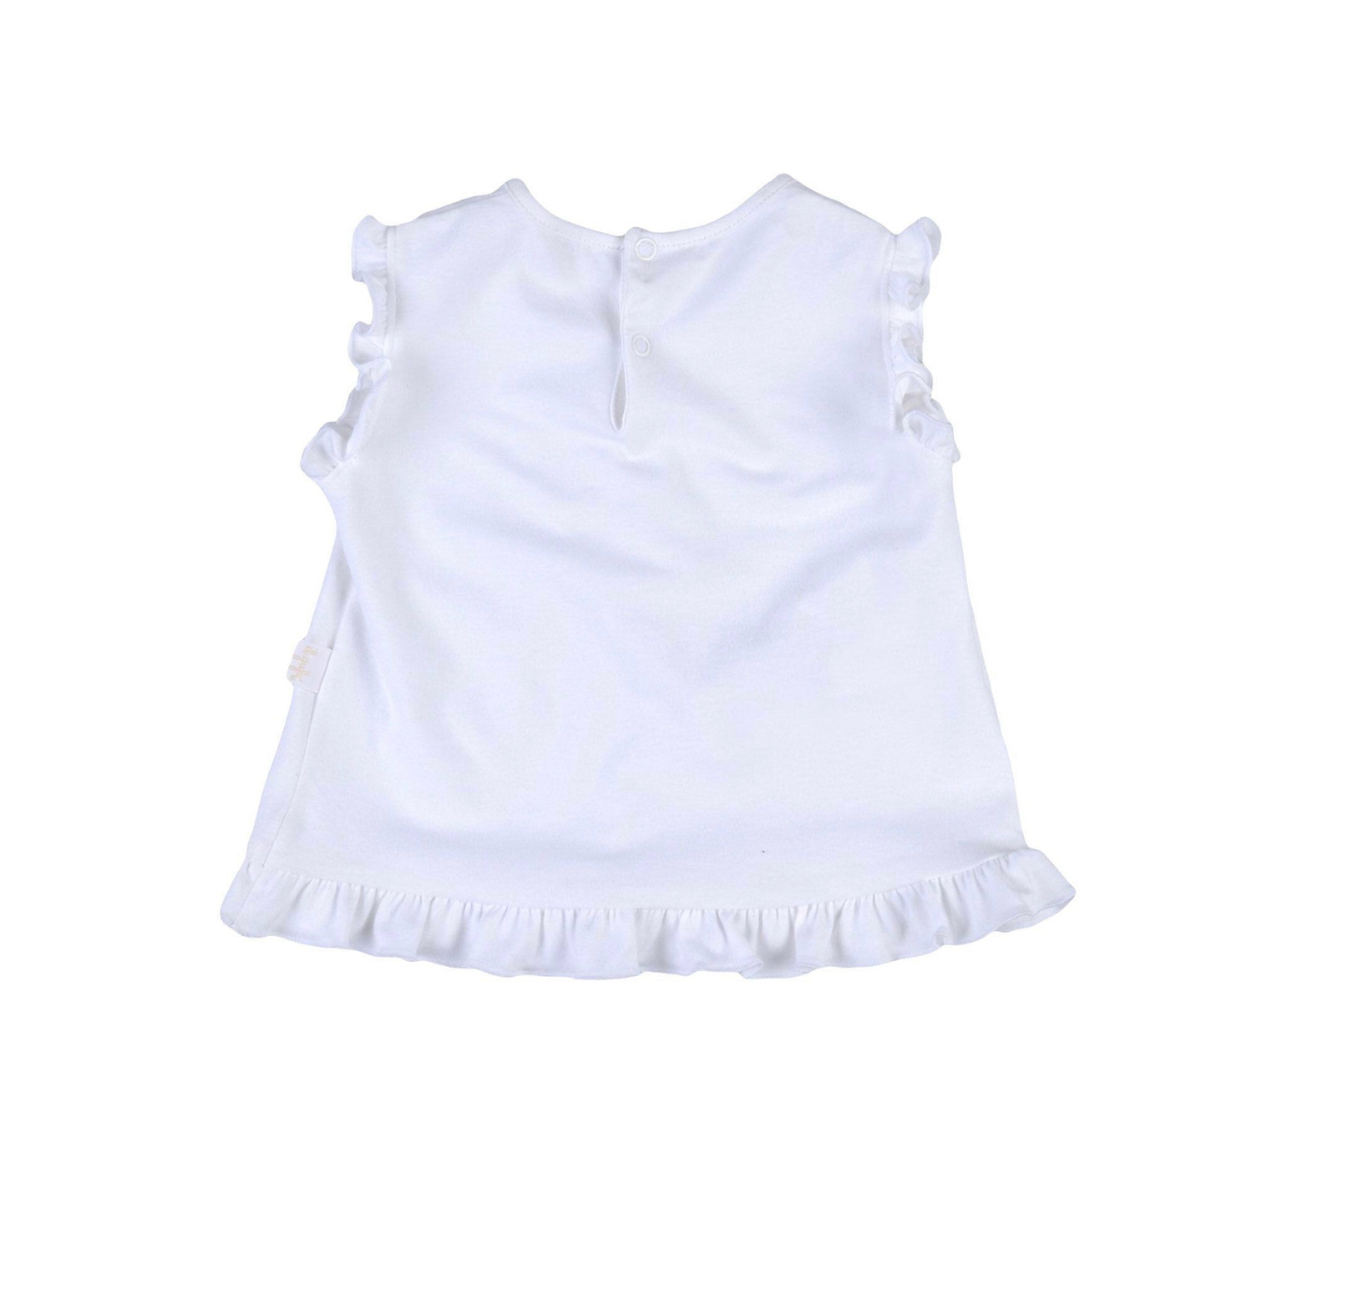 IL GUFO - White dress - 6 months